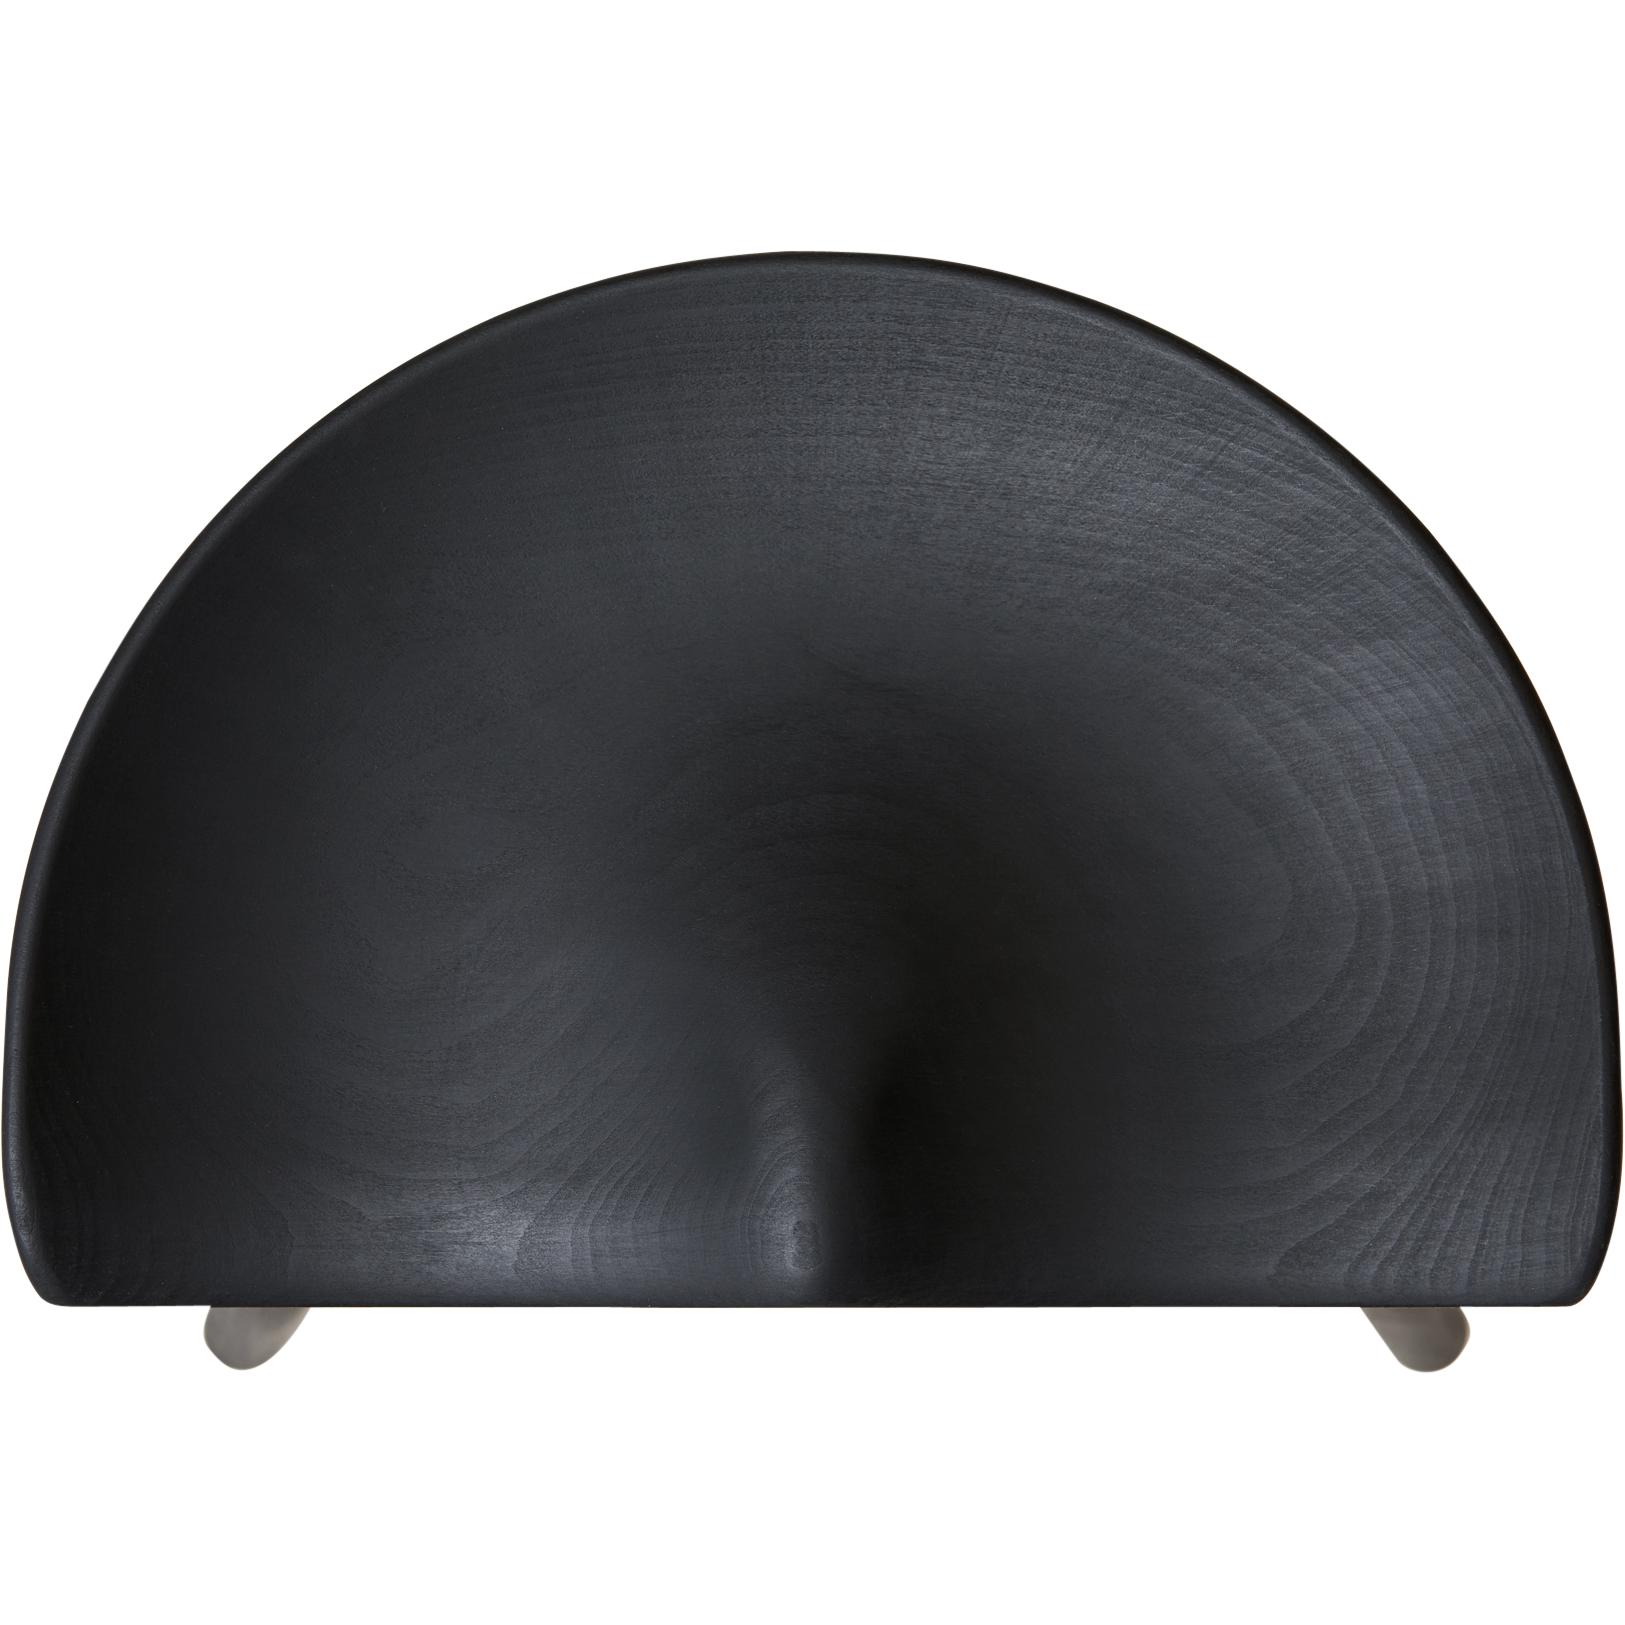 Form & Reform Shoemaker Chair n. 78. faggio nero colorato